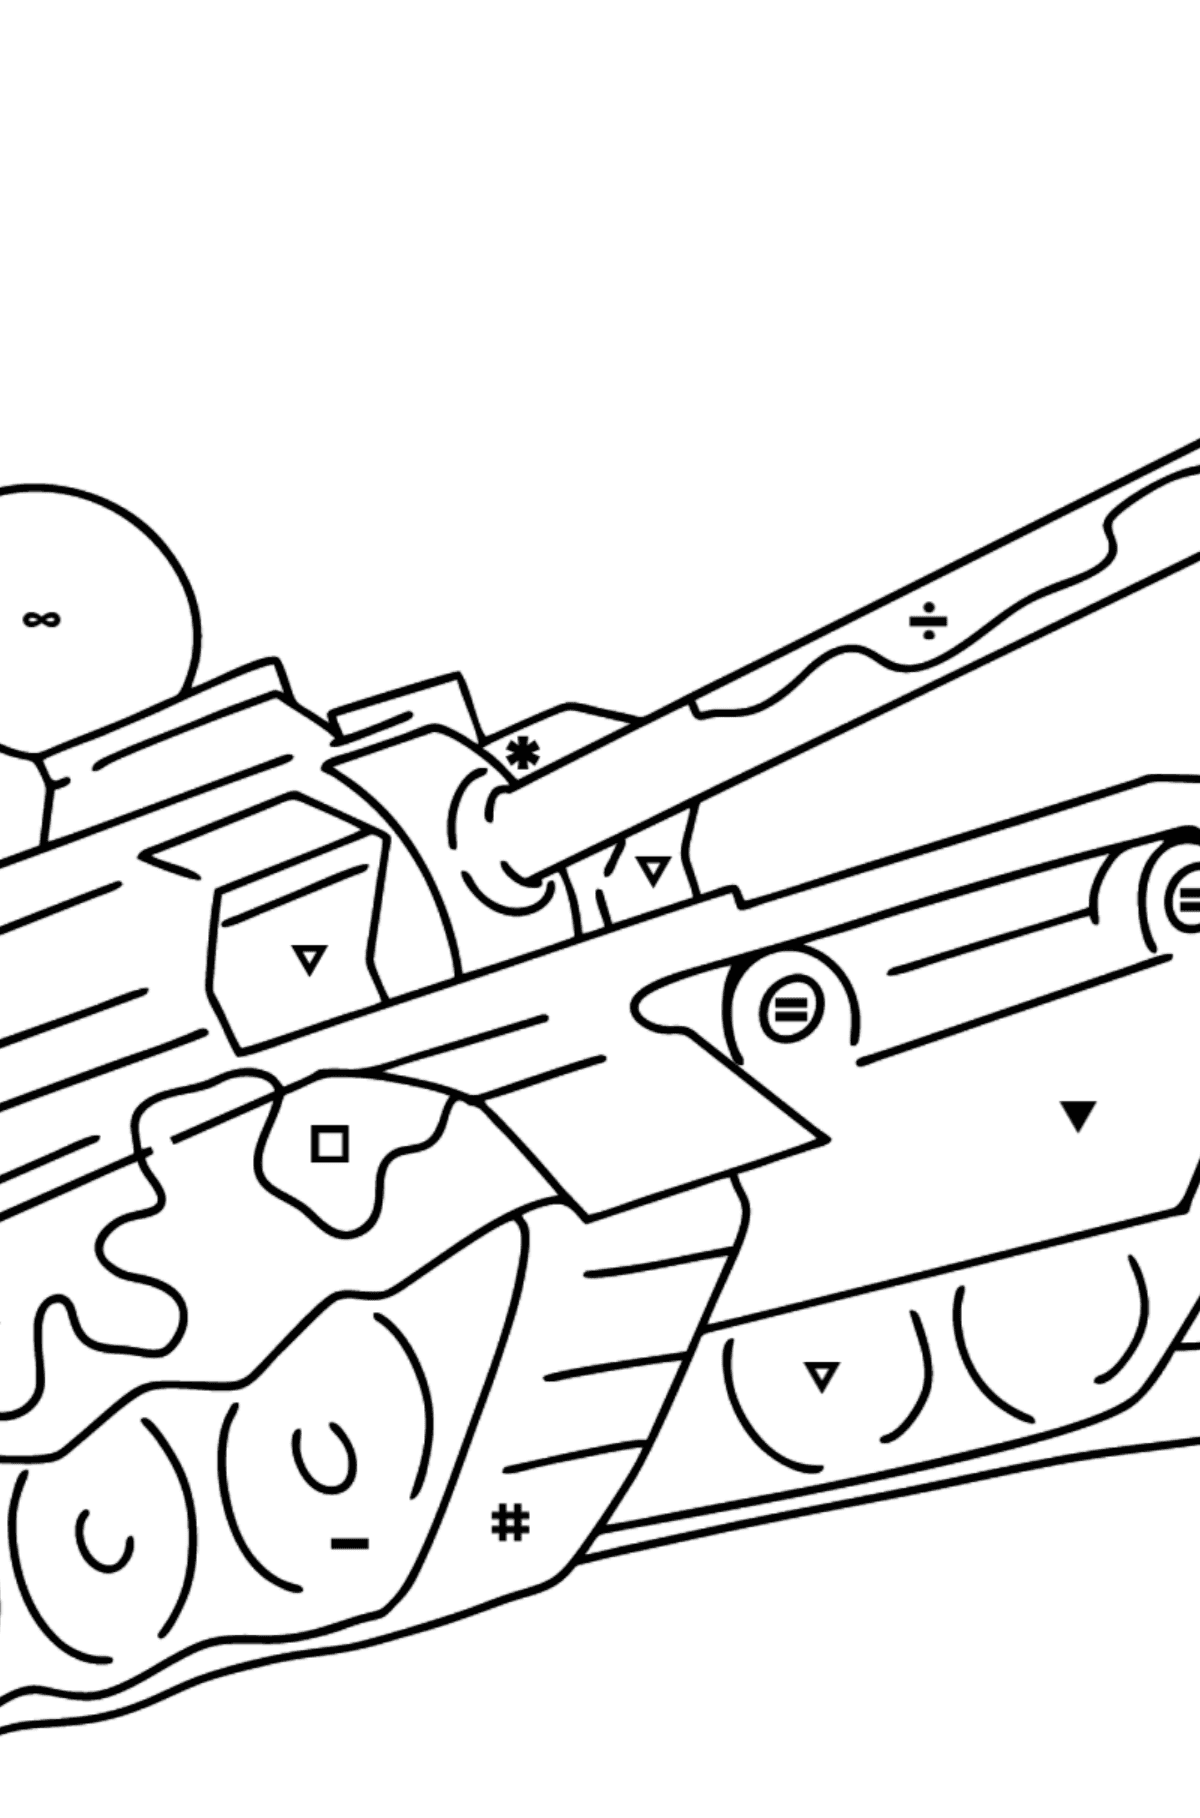 Värityskuva sotilaallinen panssarivaunu - Väritys Symbolien mukaan lapsille